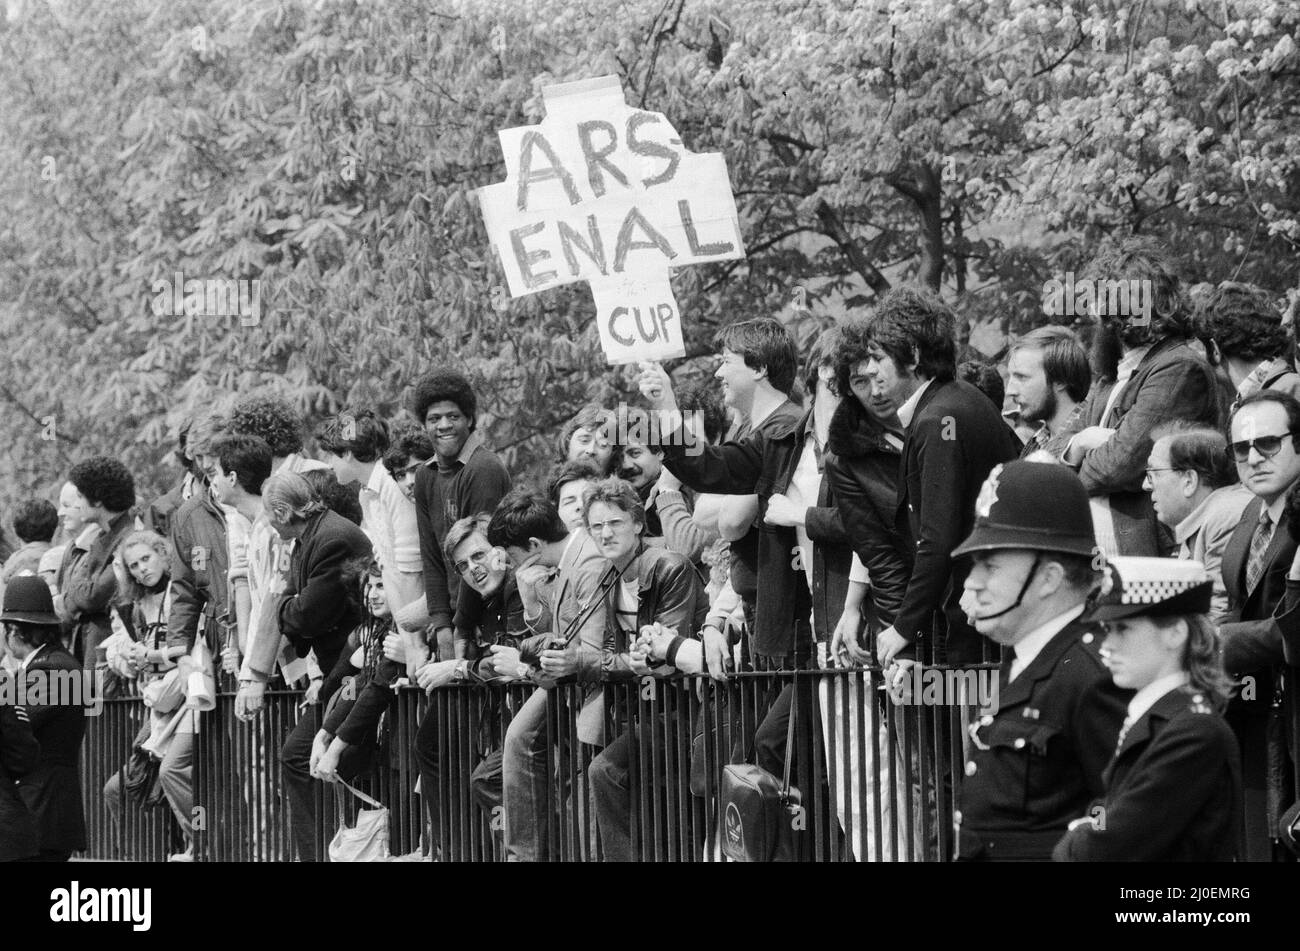 Am zweiten Tag der Belagerung der iranischen Botschaft in London stürmten sechs bewaffnete Männer der iranischen extremistischen Gruppe „Demokratische Revolutionsbewegung zur Befreiung Arabistans“ das Gebäude und nahmen 26 Geiseln, bevor die SAS die Botschaft zurückeroberten und die Geiseln befreiten. Arsenal-Fußballfans blicken auf die Demonstration von Ayatollah-Anhängern vor der Botschaft. 1. Mai 1980. Stockfoto